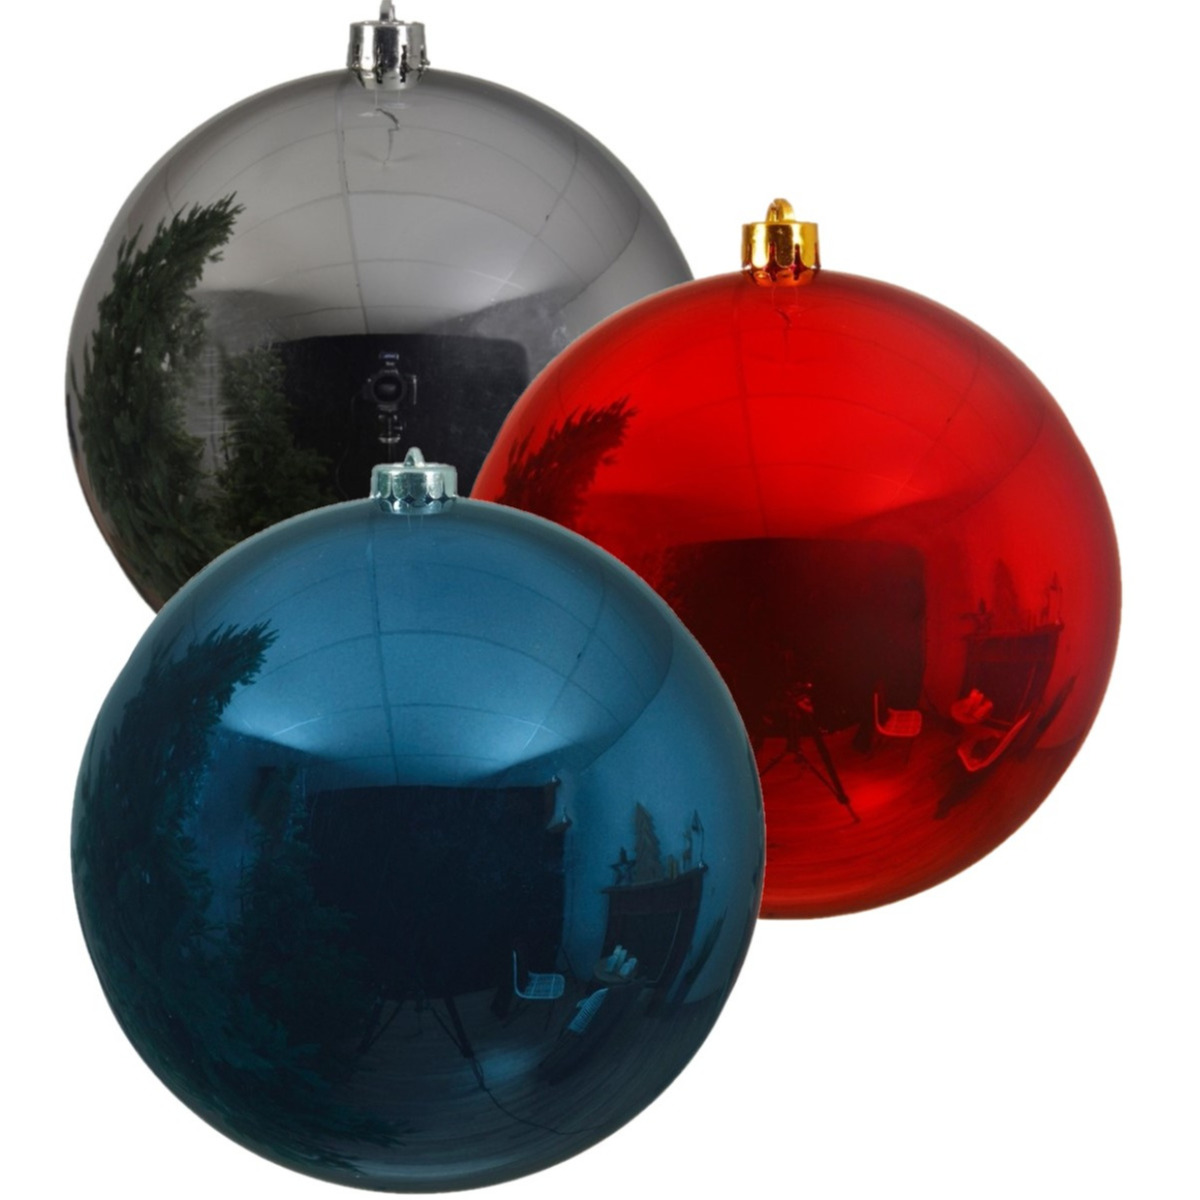 Kerstversieringen set van 6x grote kunststof kerstballen blauw-zilver-rood 14 cm glans - 2x per kleur